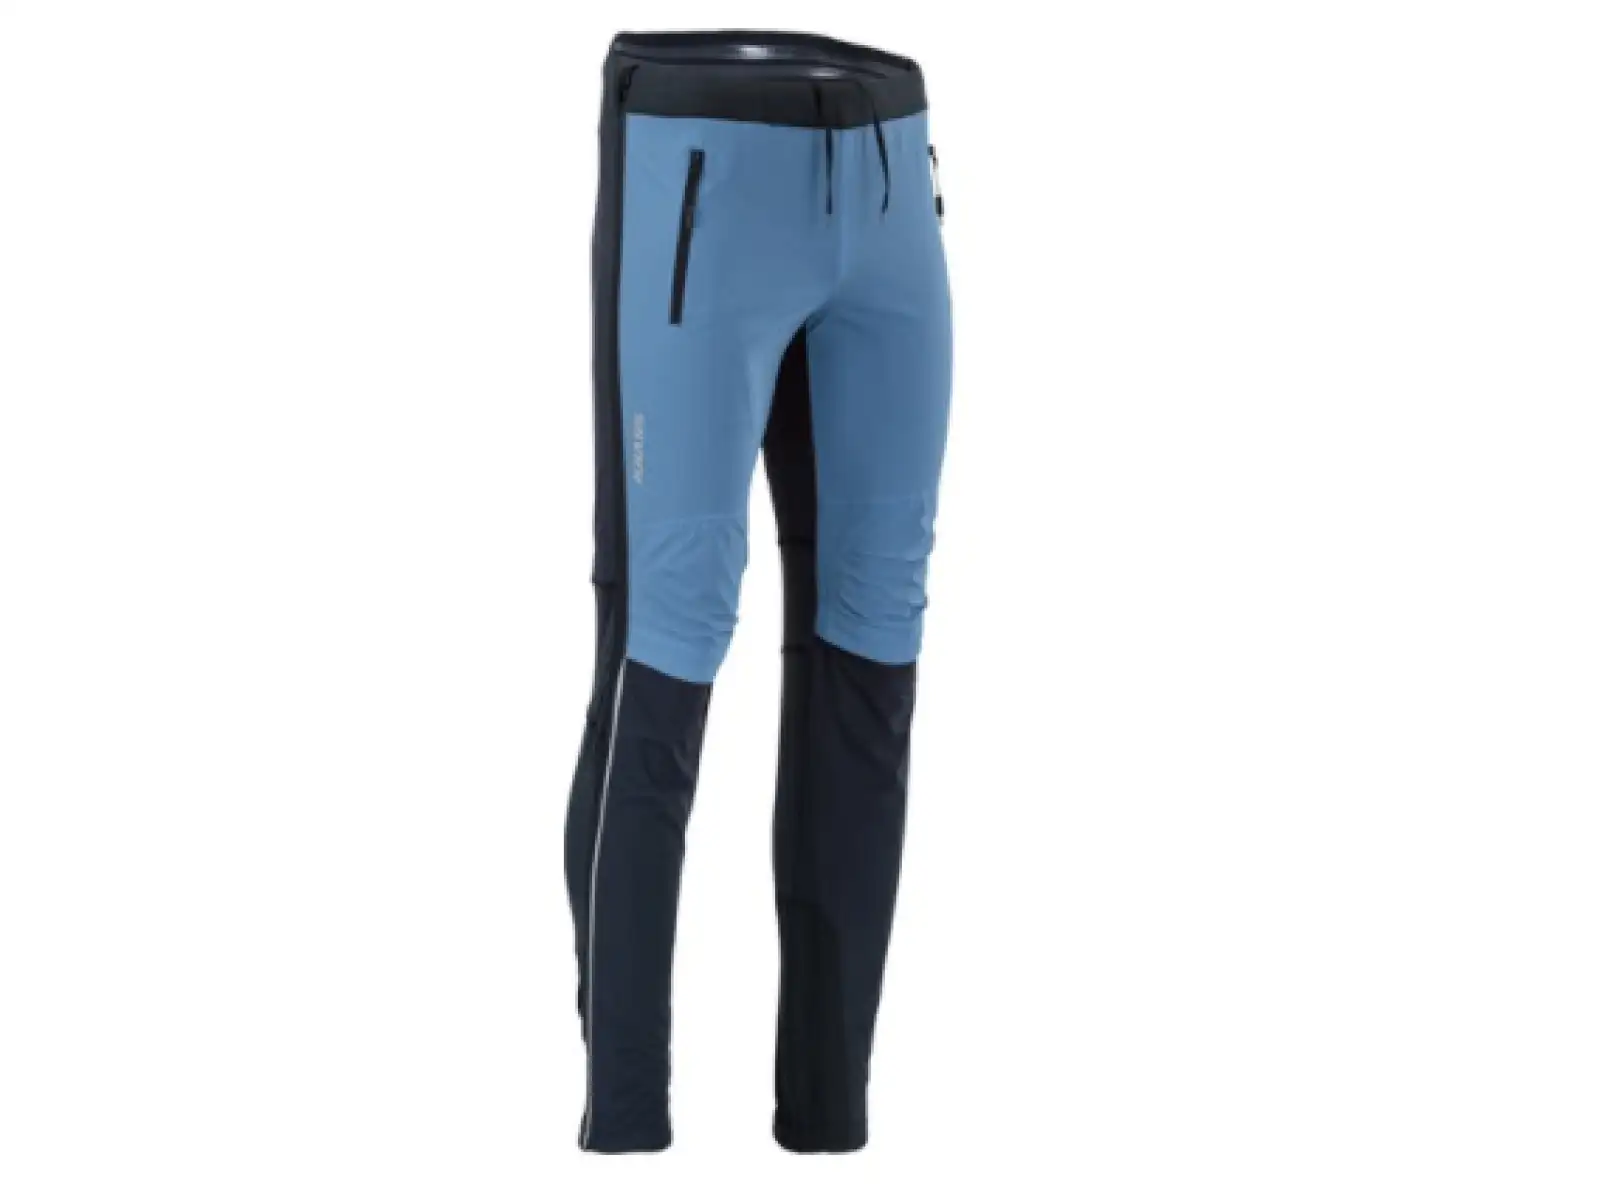 Silvini Soracte Pro MP1748 pánské kalhoty black/blue